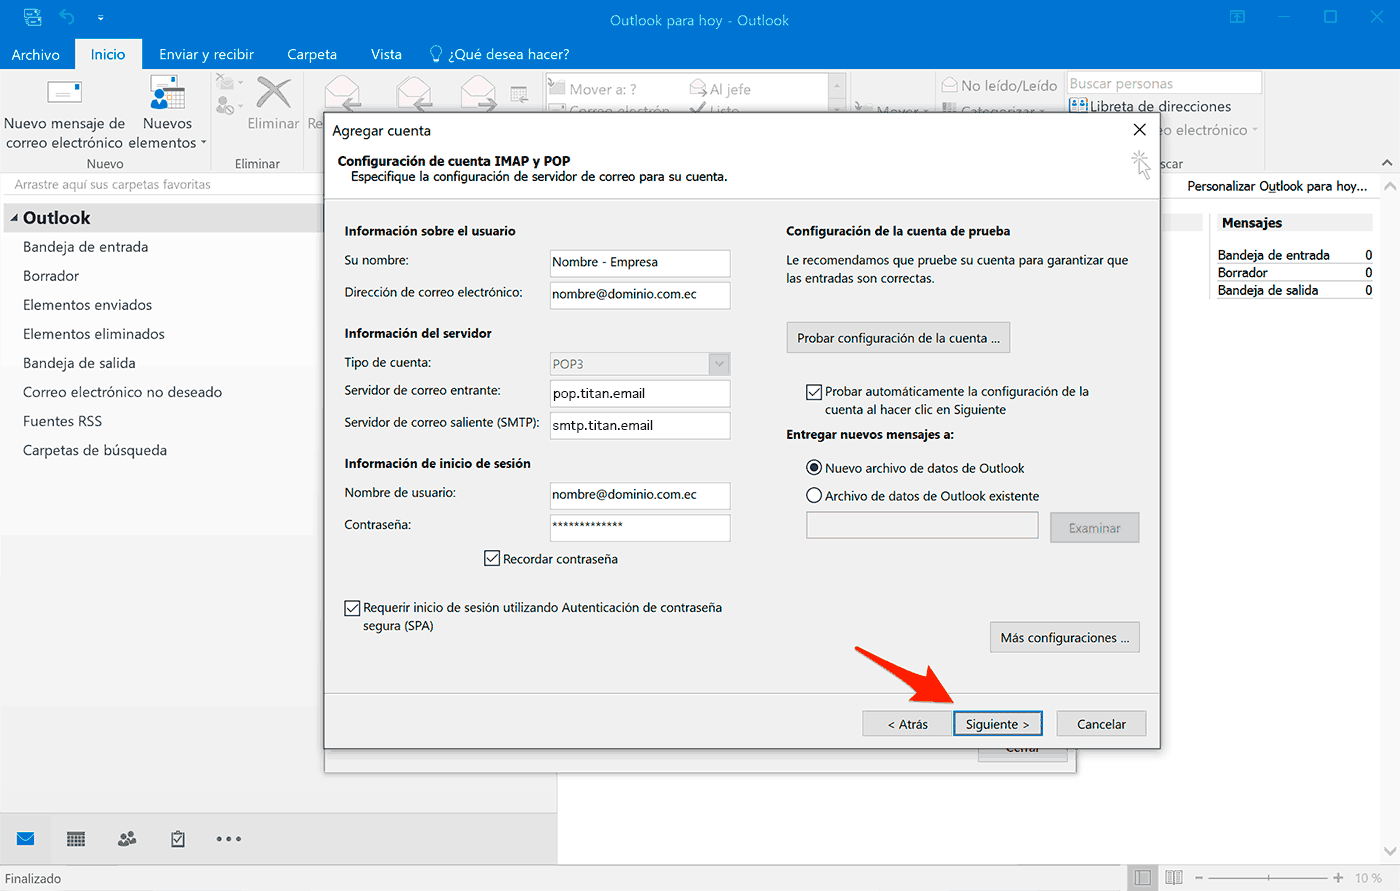 Outlook 2016 en Windows 10: Configuraci贸n de la cuenta manual y siguiente